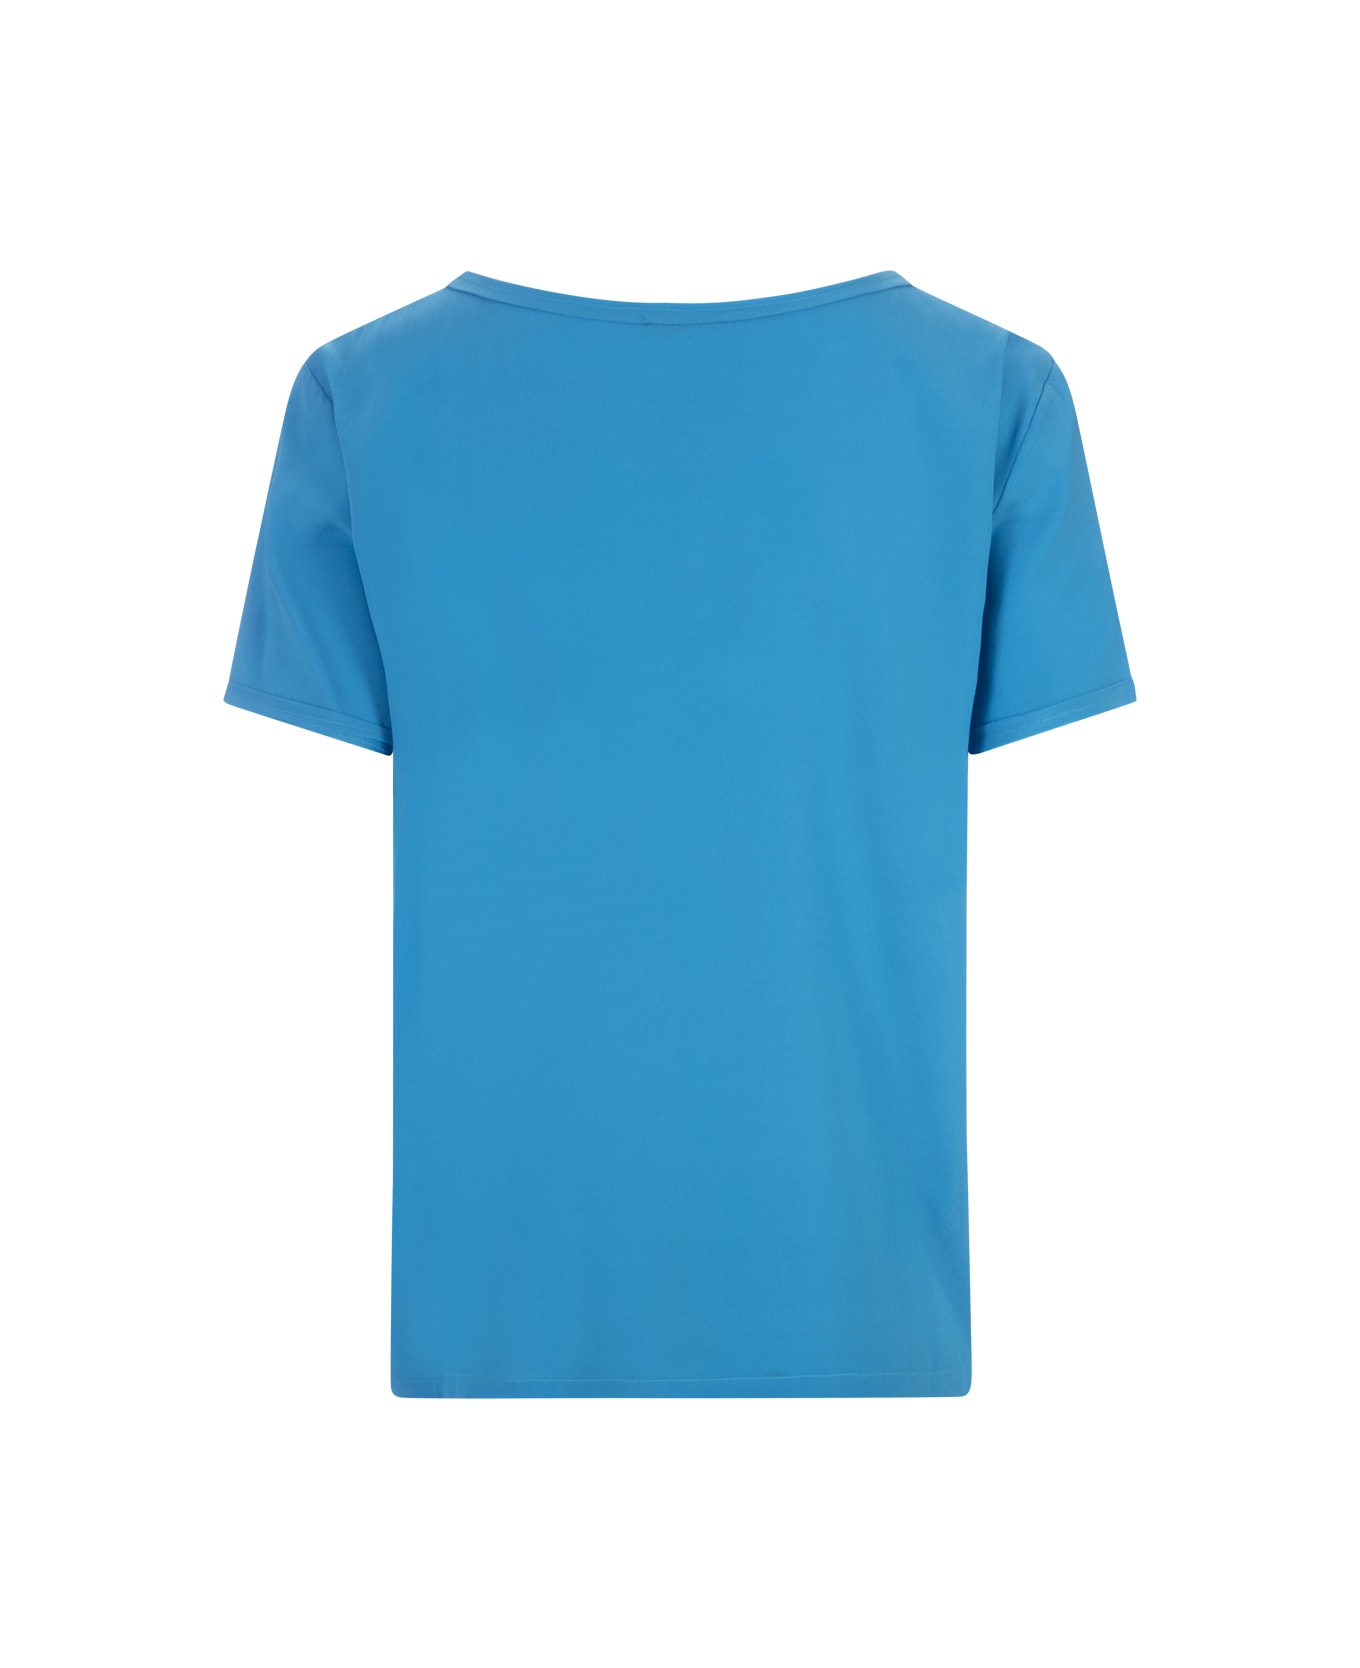 Her Shirt Blue Opaque Silk T-shirt - Blue